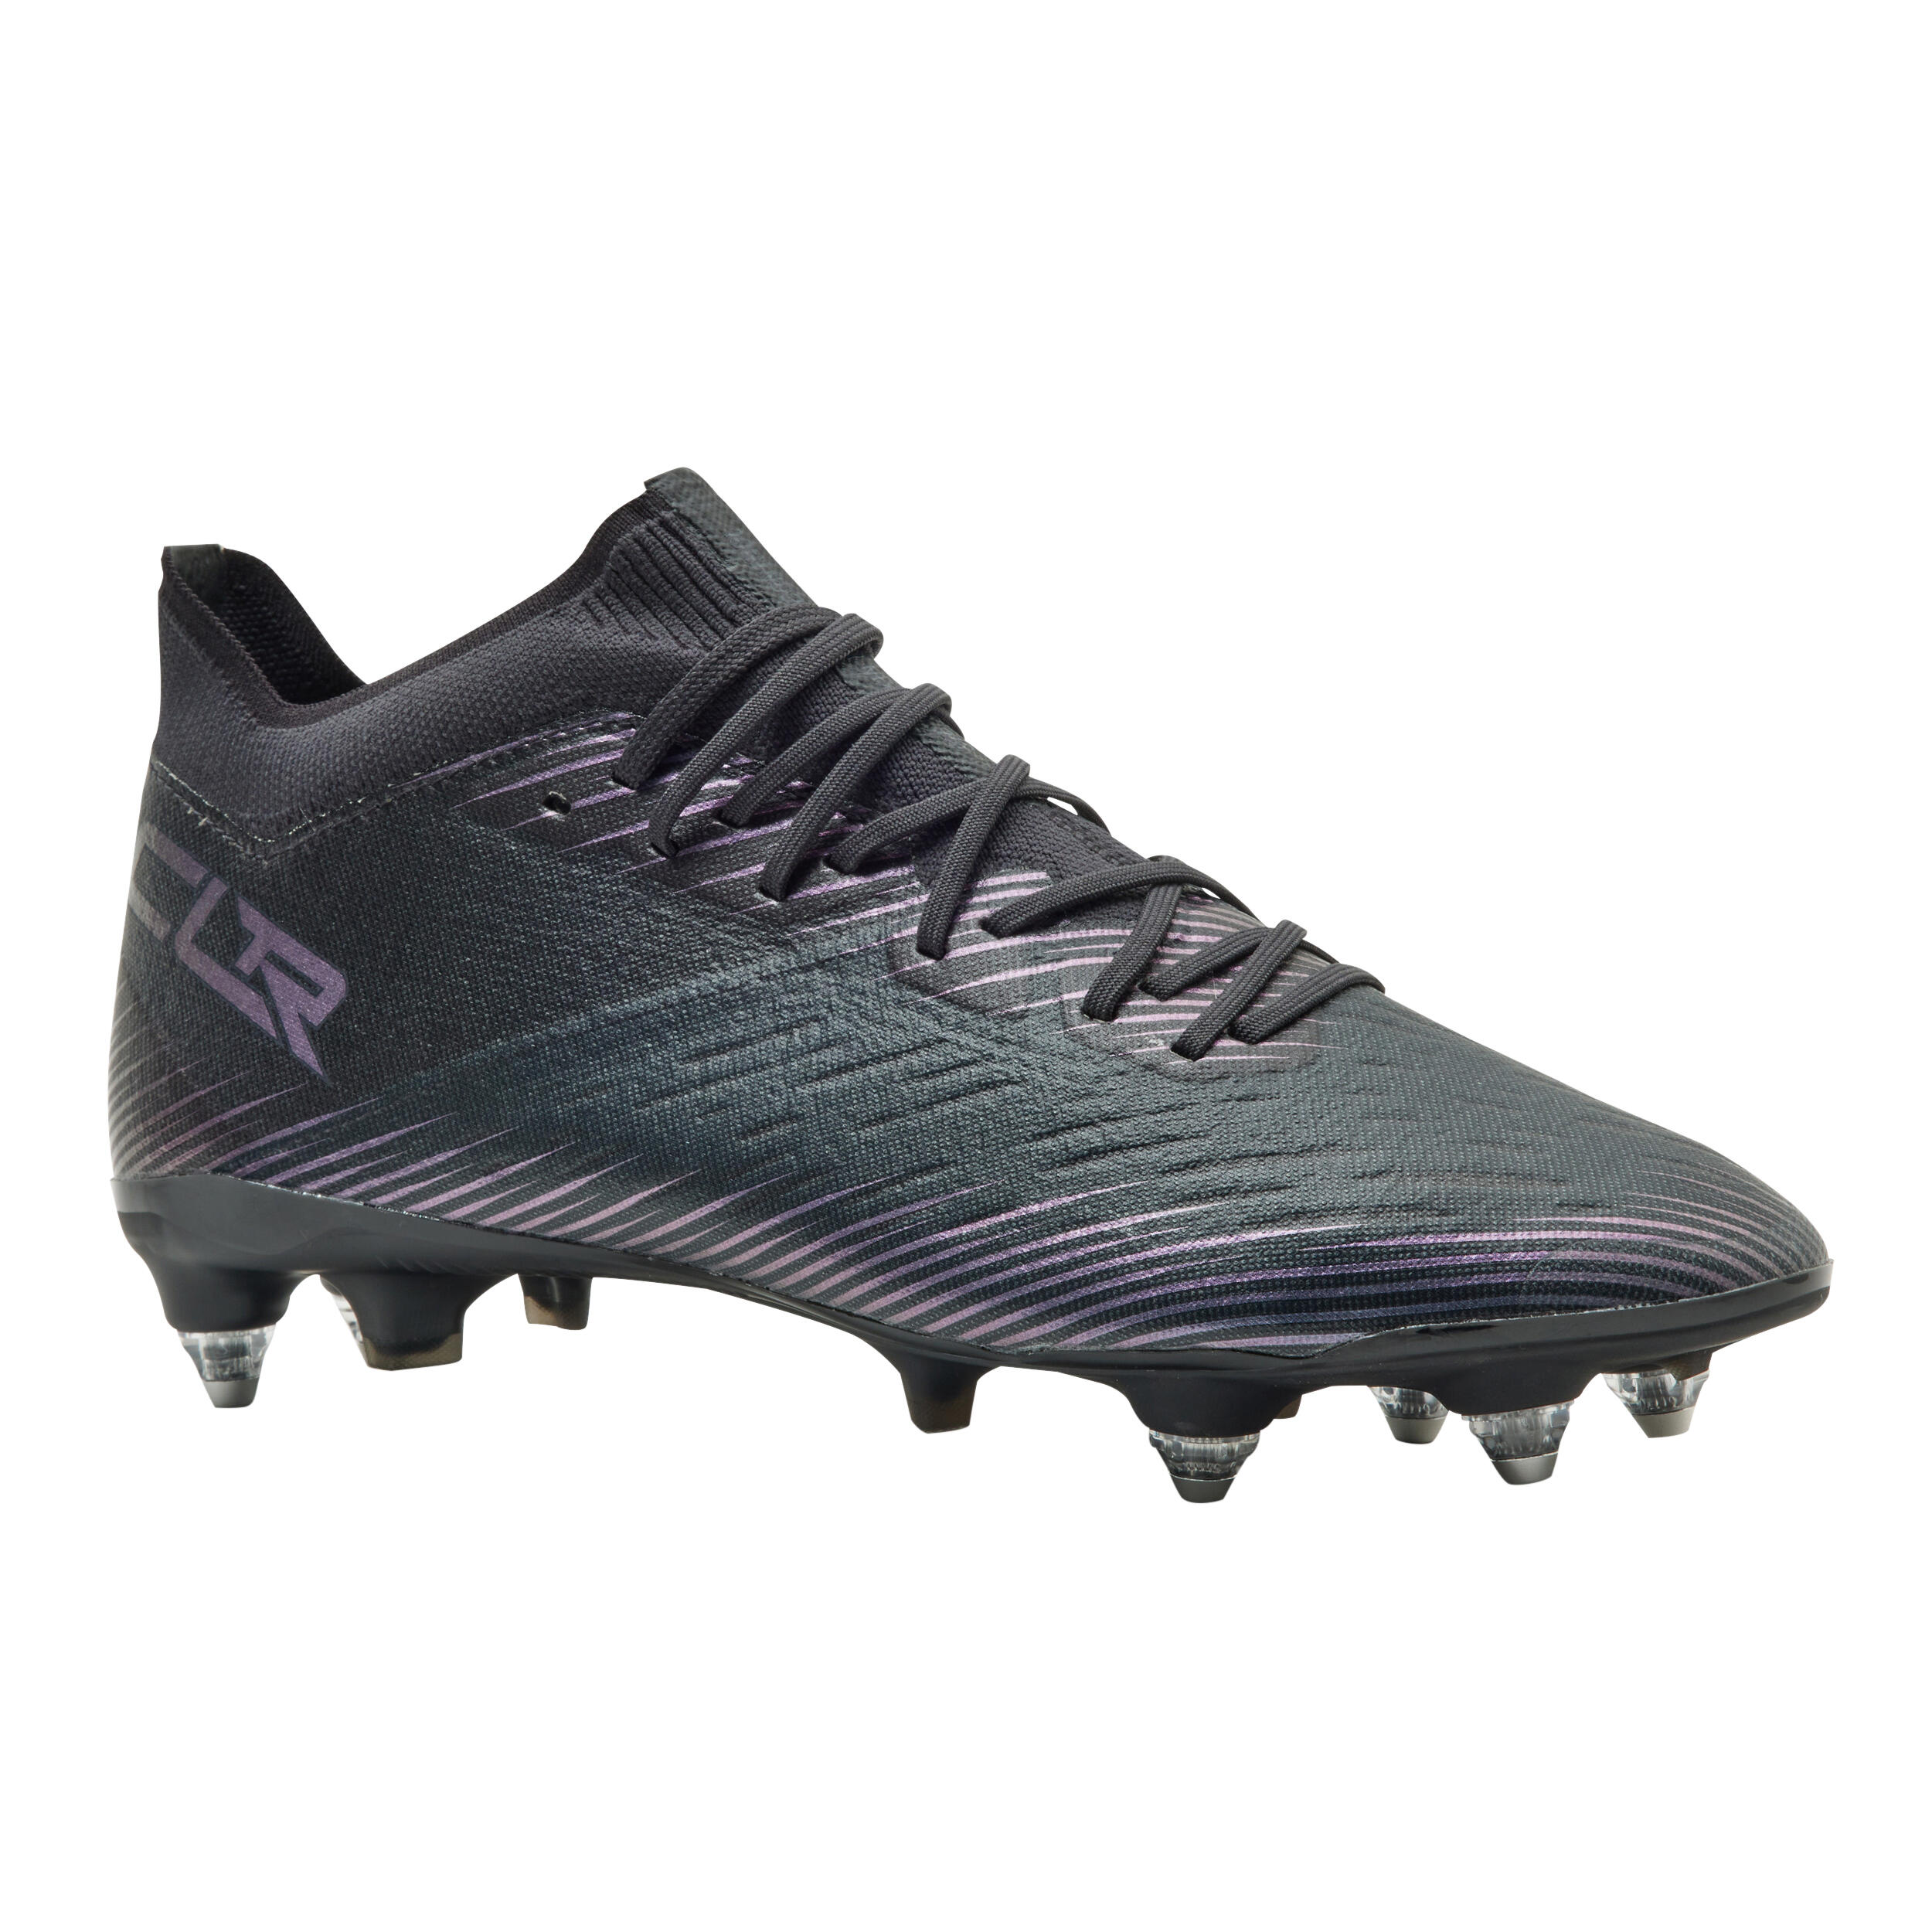 KIPSTA Adult Hybrid Diamond Stud Football Boots CLR SG - Black